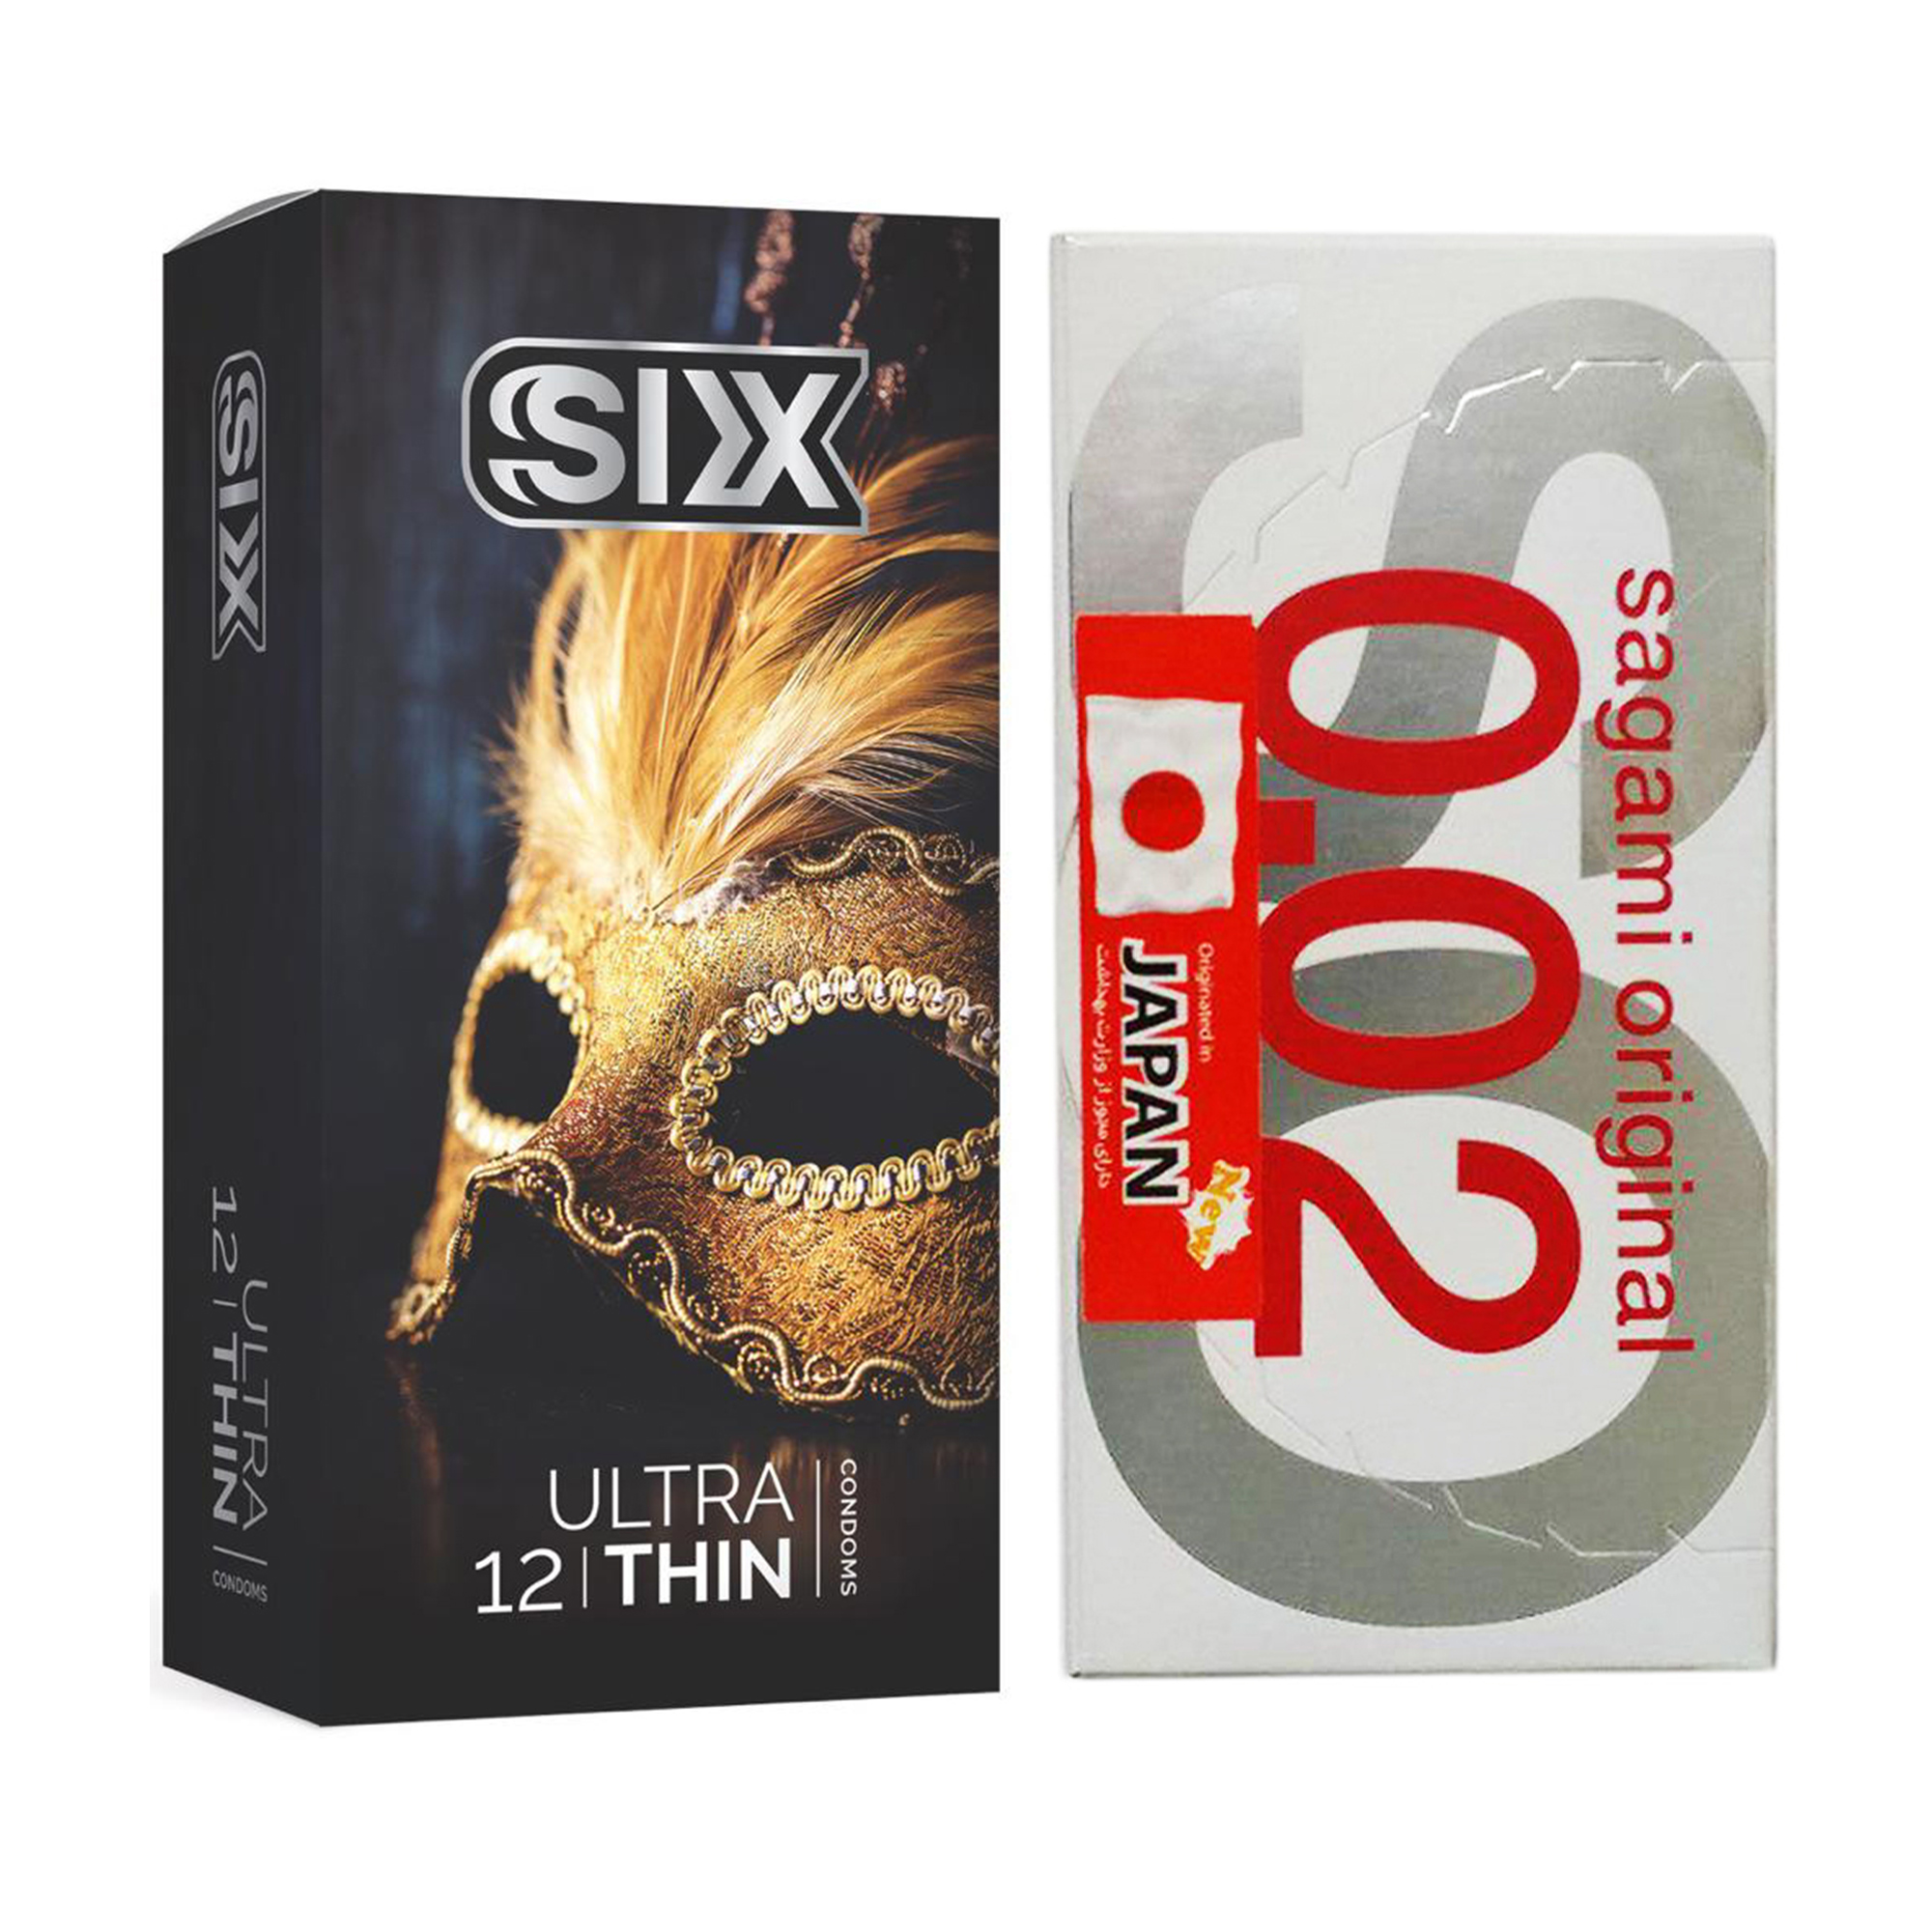 کاندوم ساگامی مدل Normal بسته 2 عددی به همراه کاندوم سیکس مدل Ultra Thin بسته 12 عددی